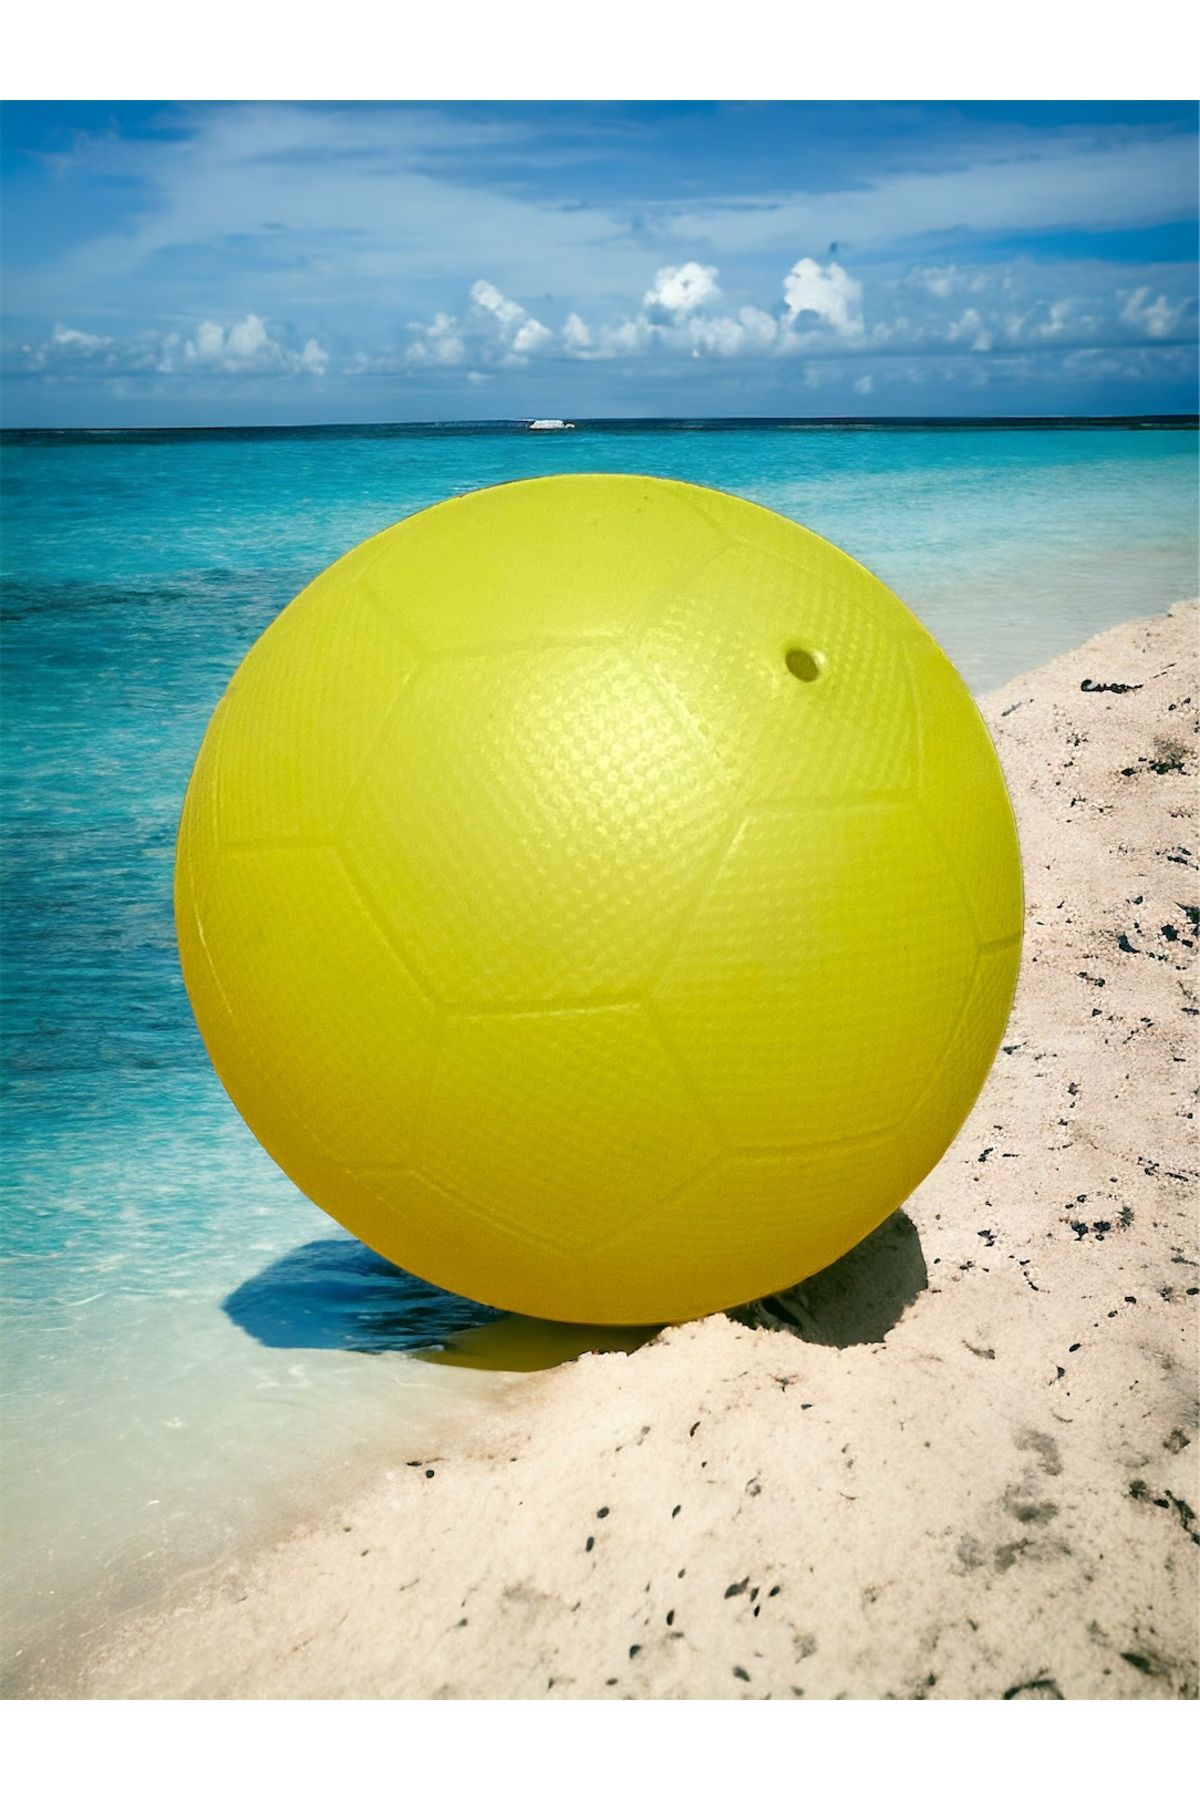 TOCSPORTS Çocuk ve Yetişkinler İçin Evde Suda Denizde ve Havuzda Oynamalık - No 2 - Mini Futbol - Hentbol Topu